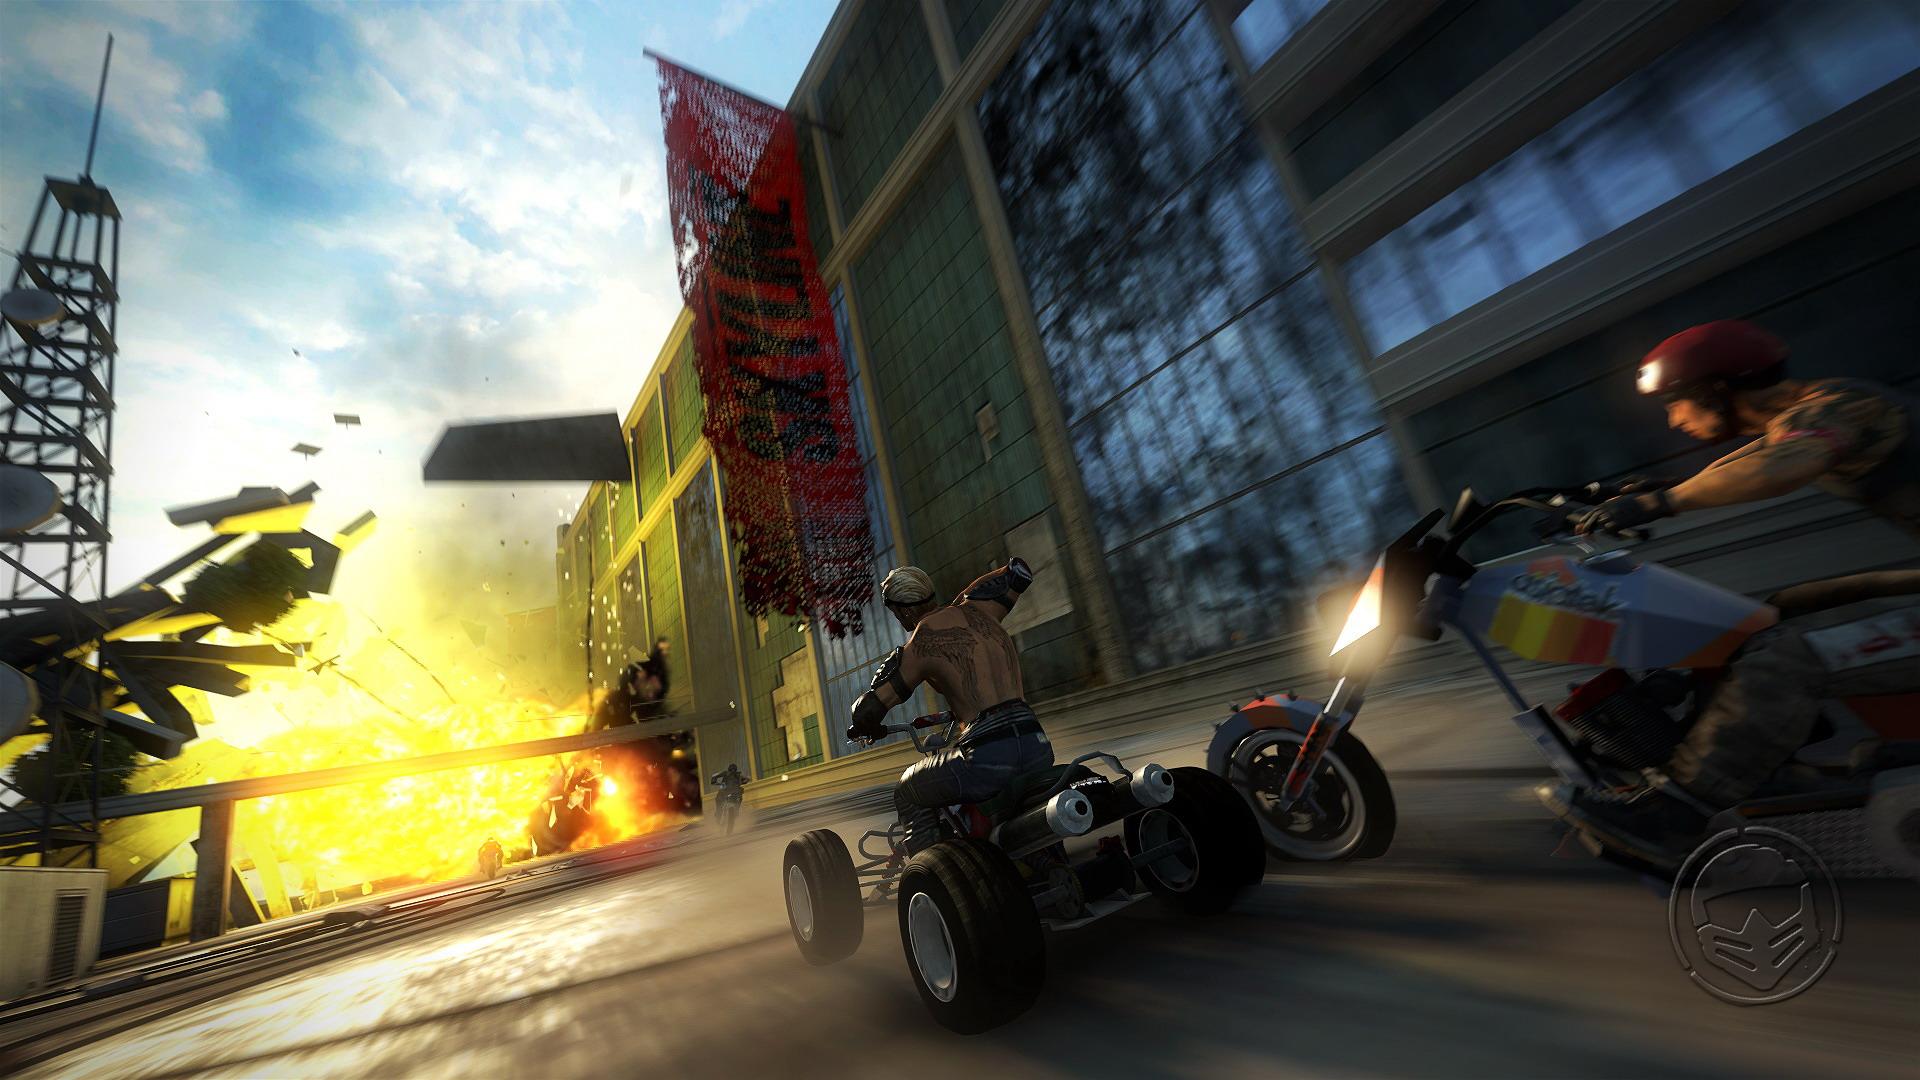 Motorstorm Apocalypse 4 player split-screen gameplay offline PS3 